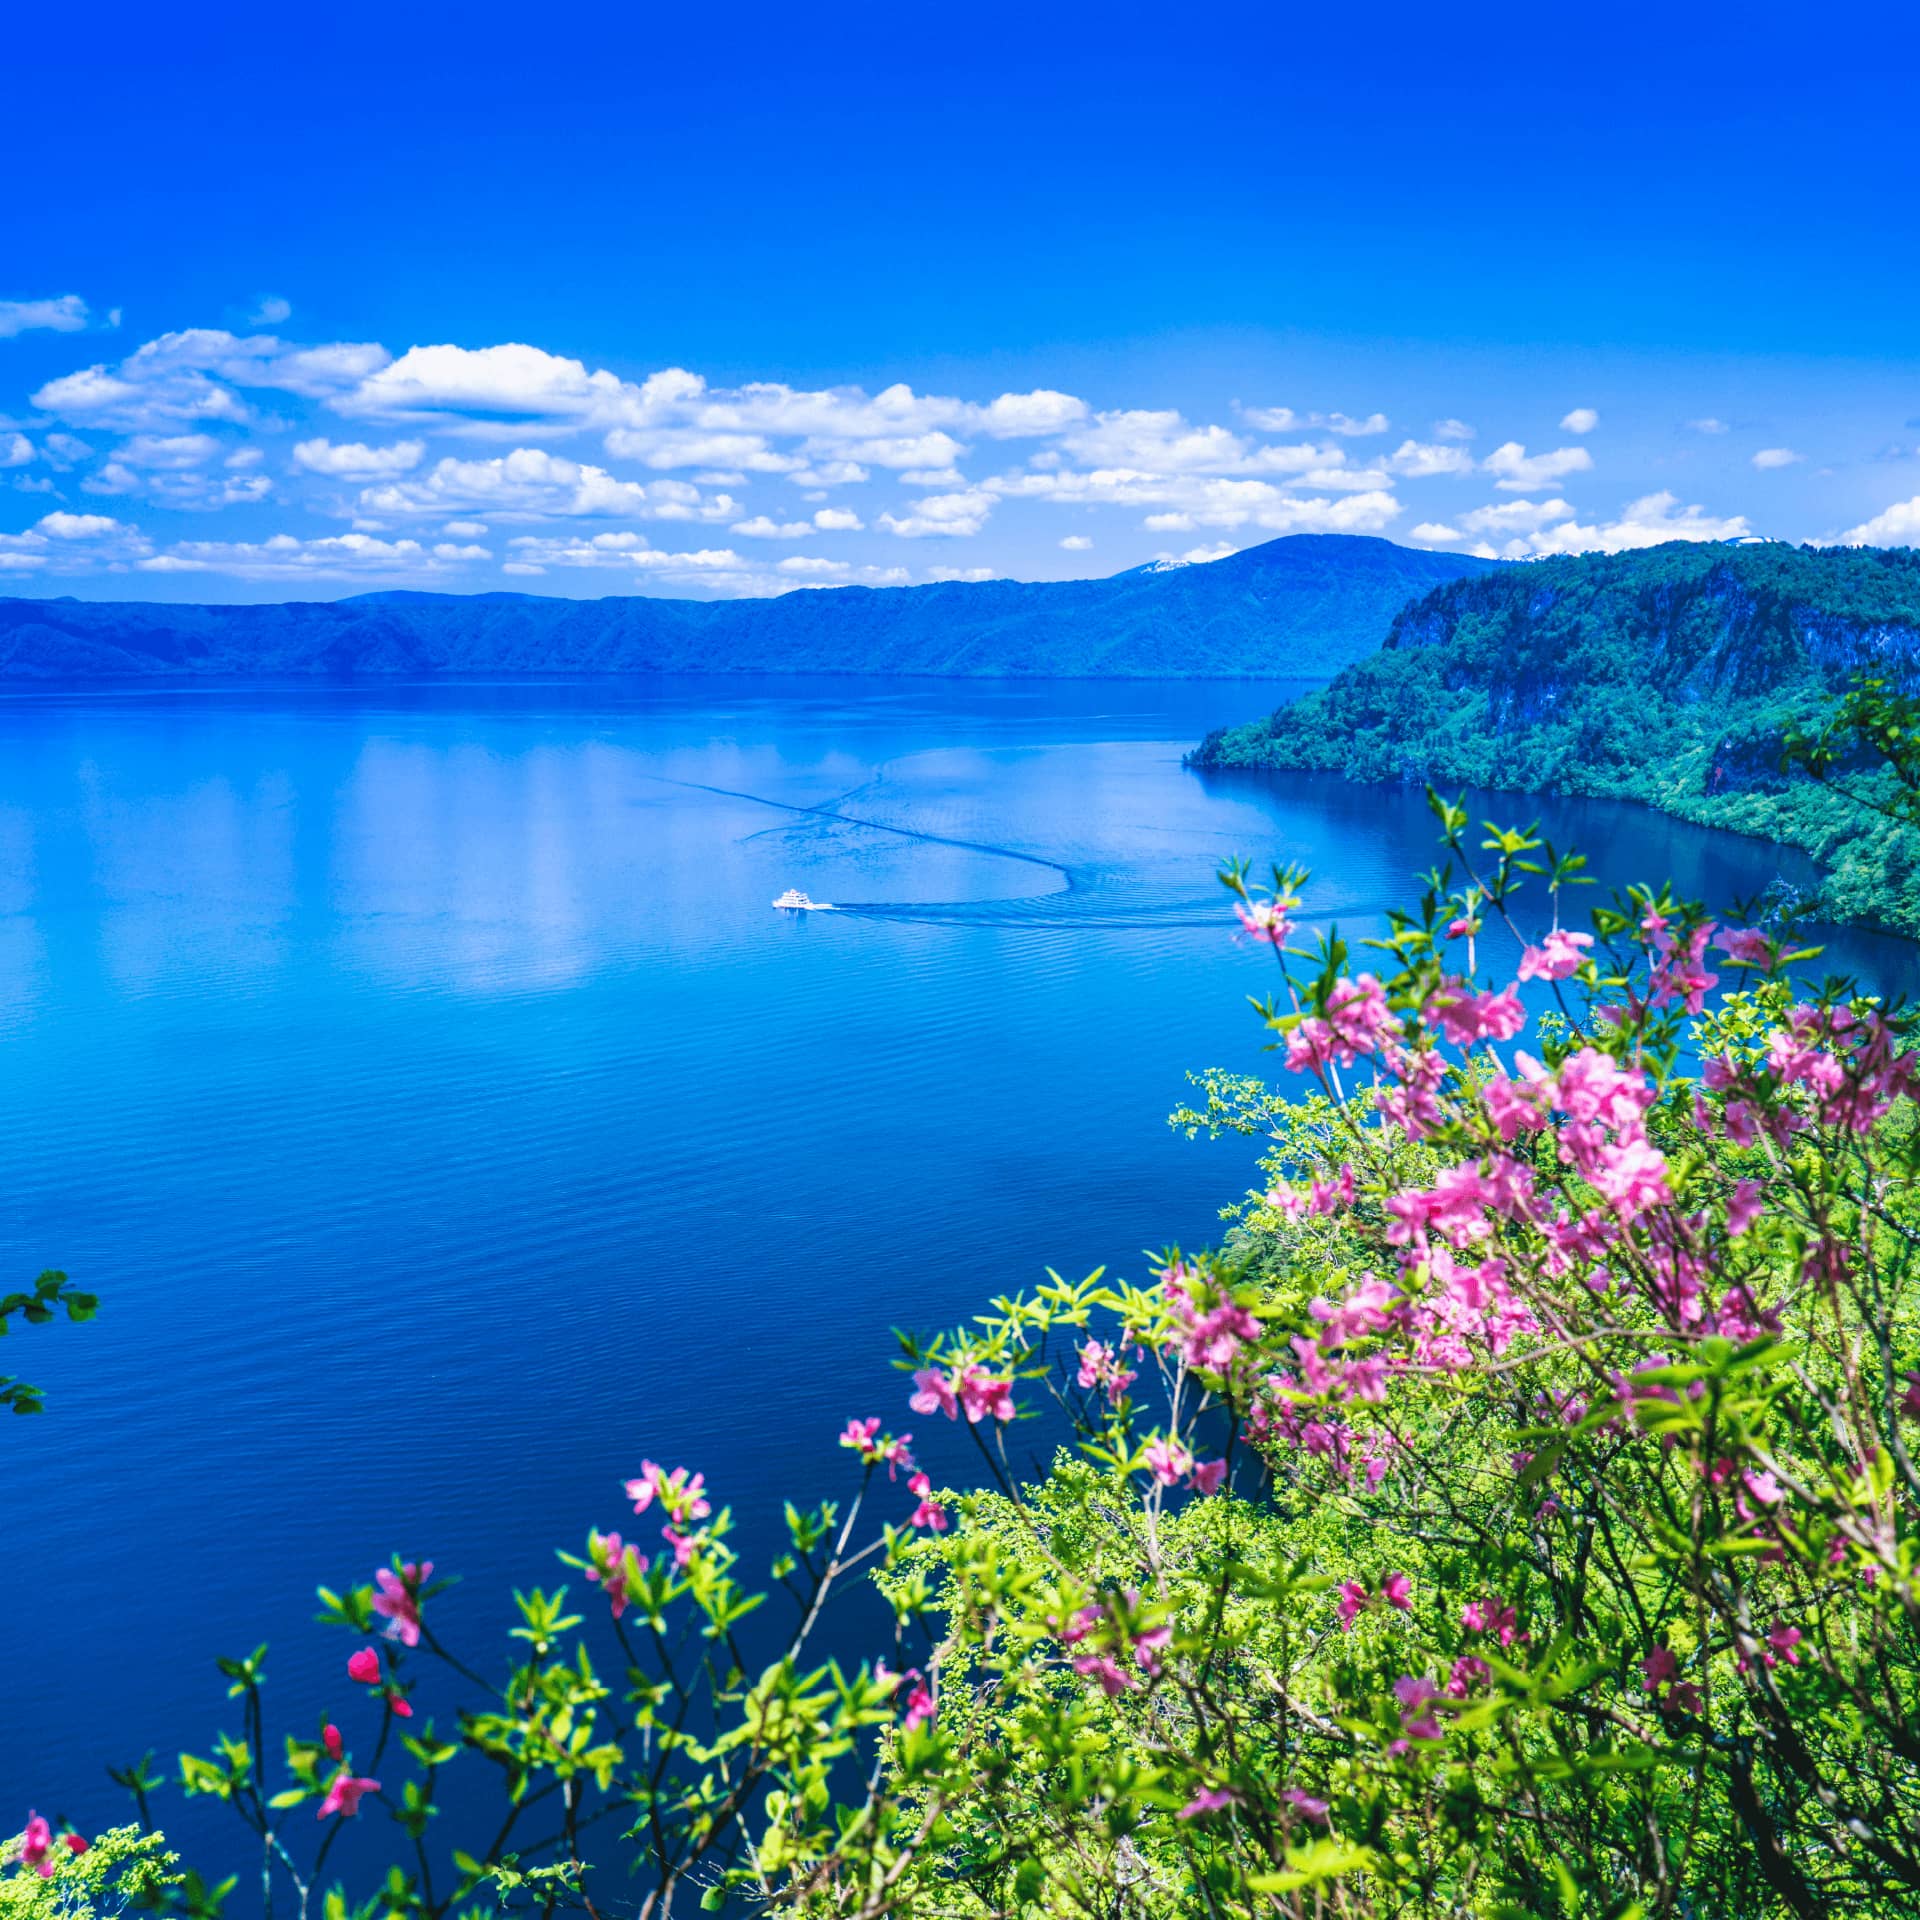 Lake Towada in spring